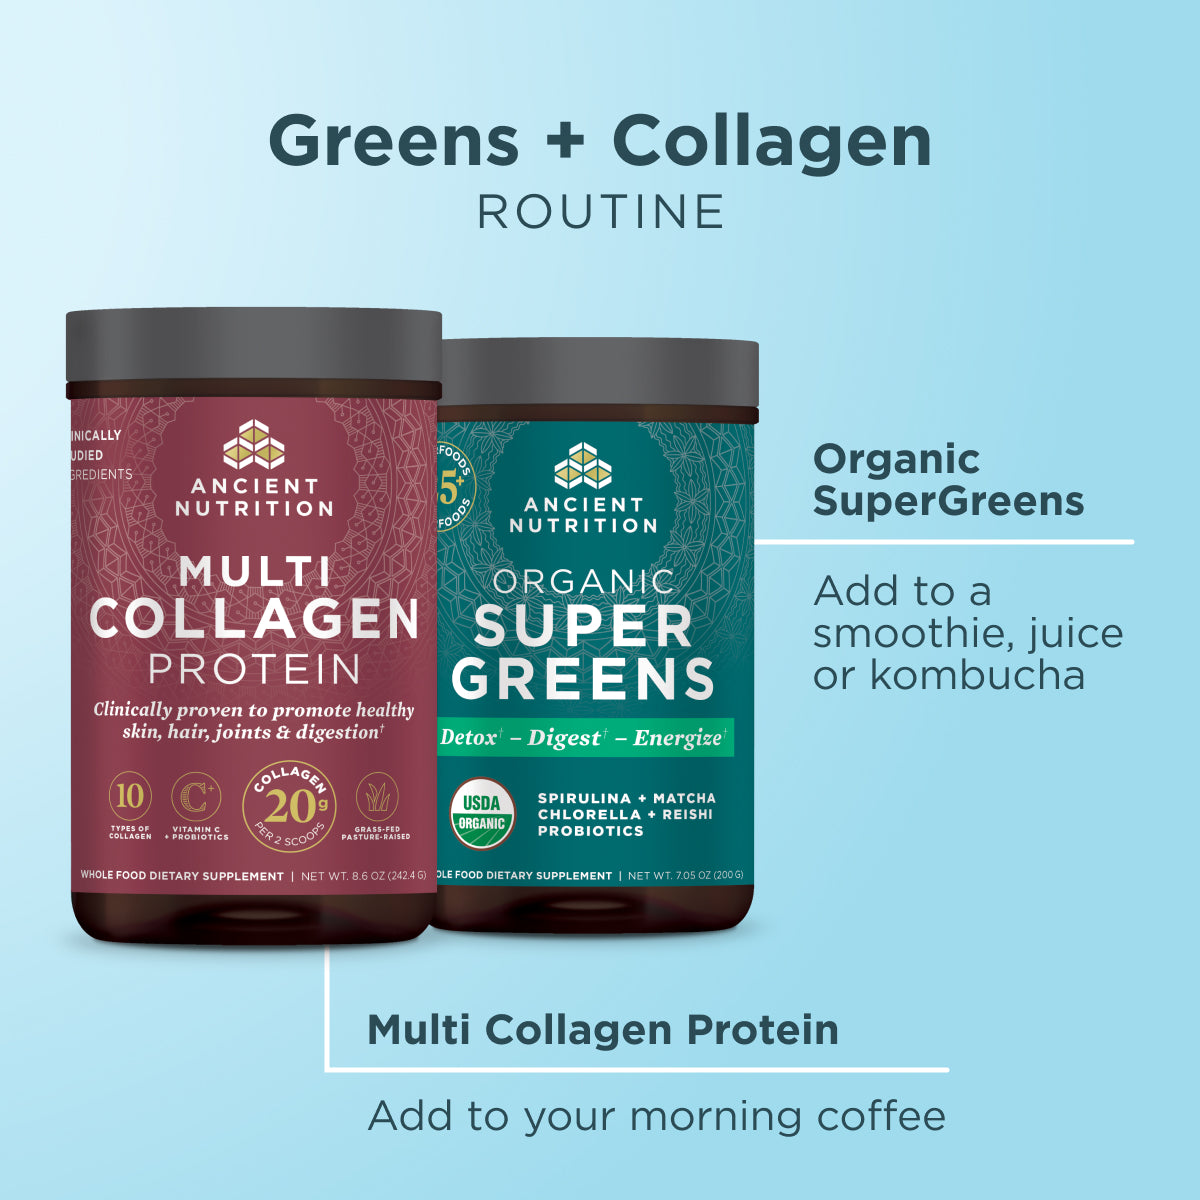 Greens + Collagen Bundle routine